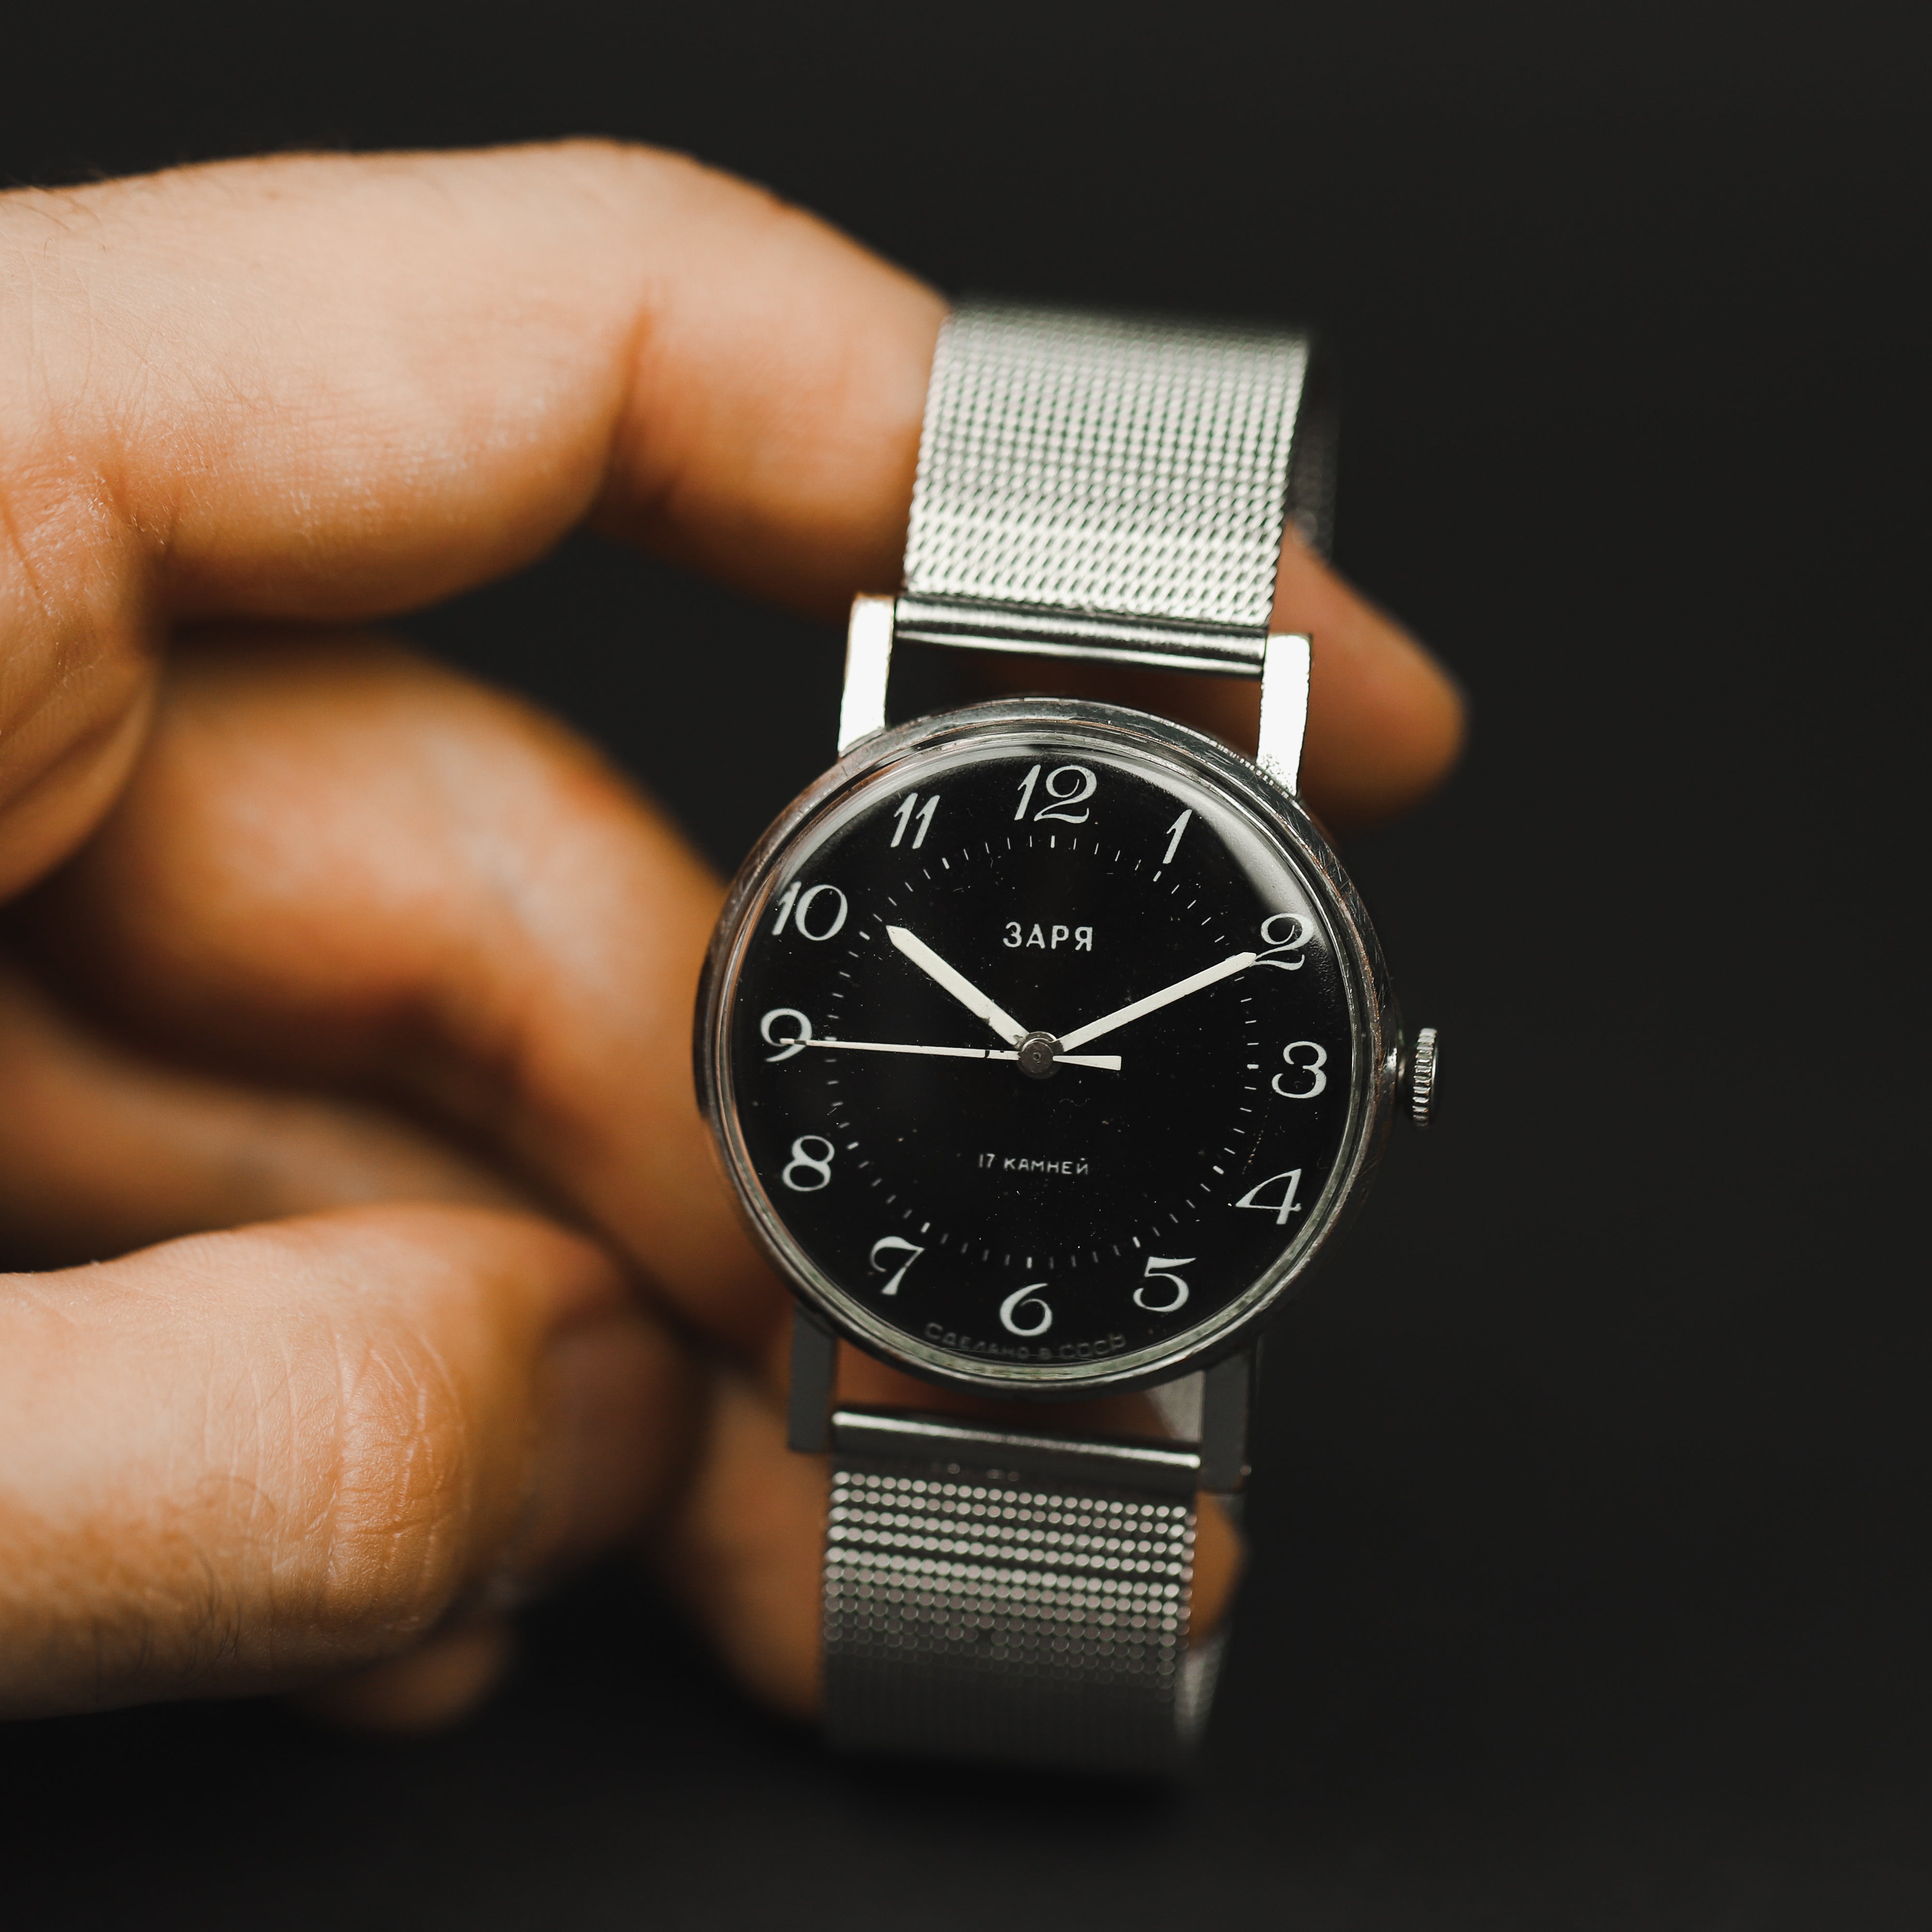 Ultra rare men's vintage soviet wrist watch Zaria